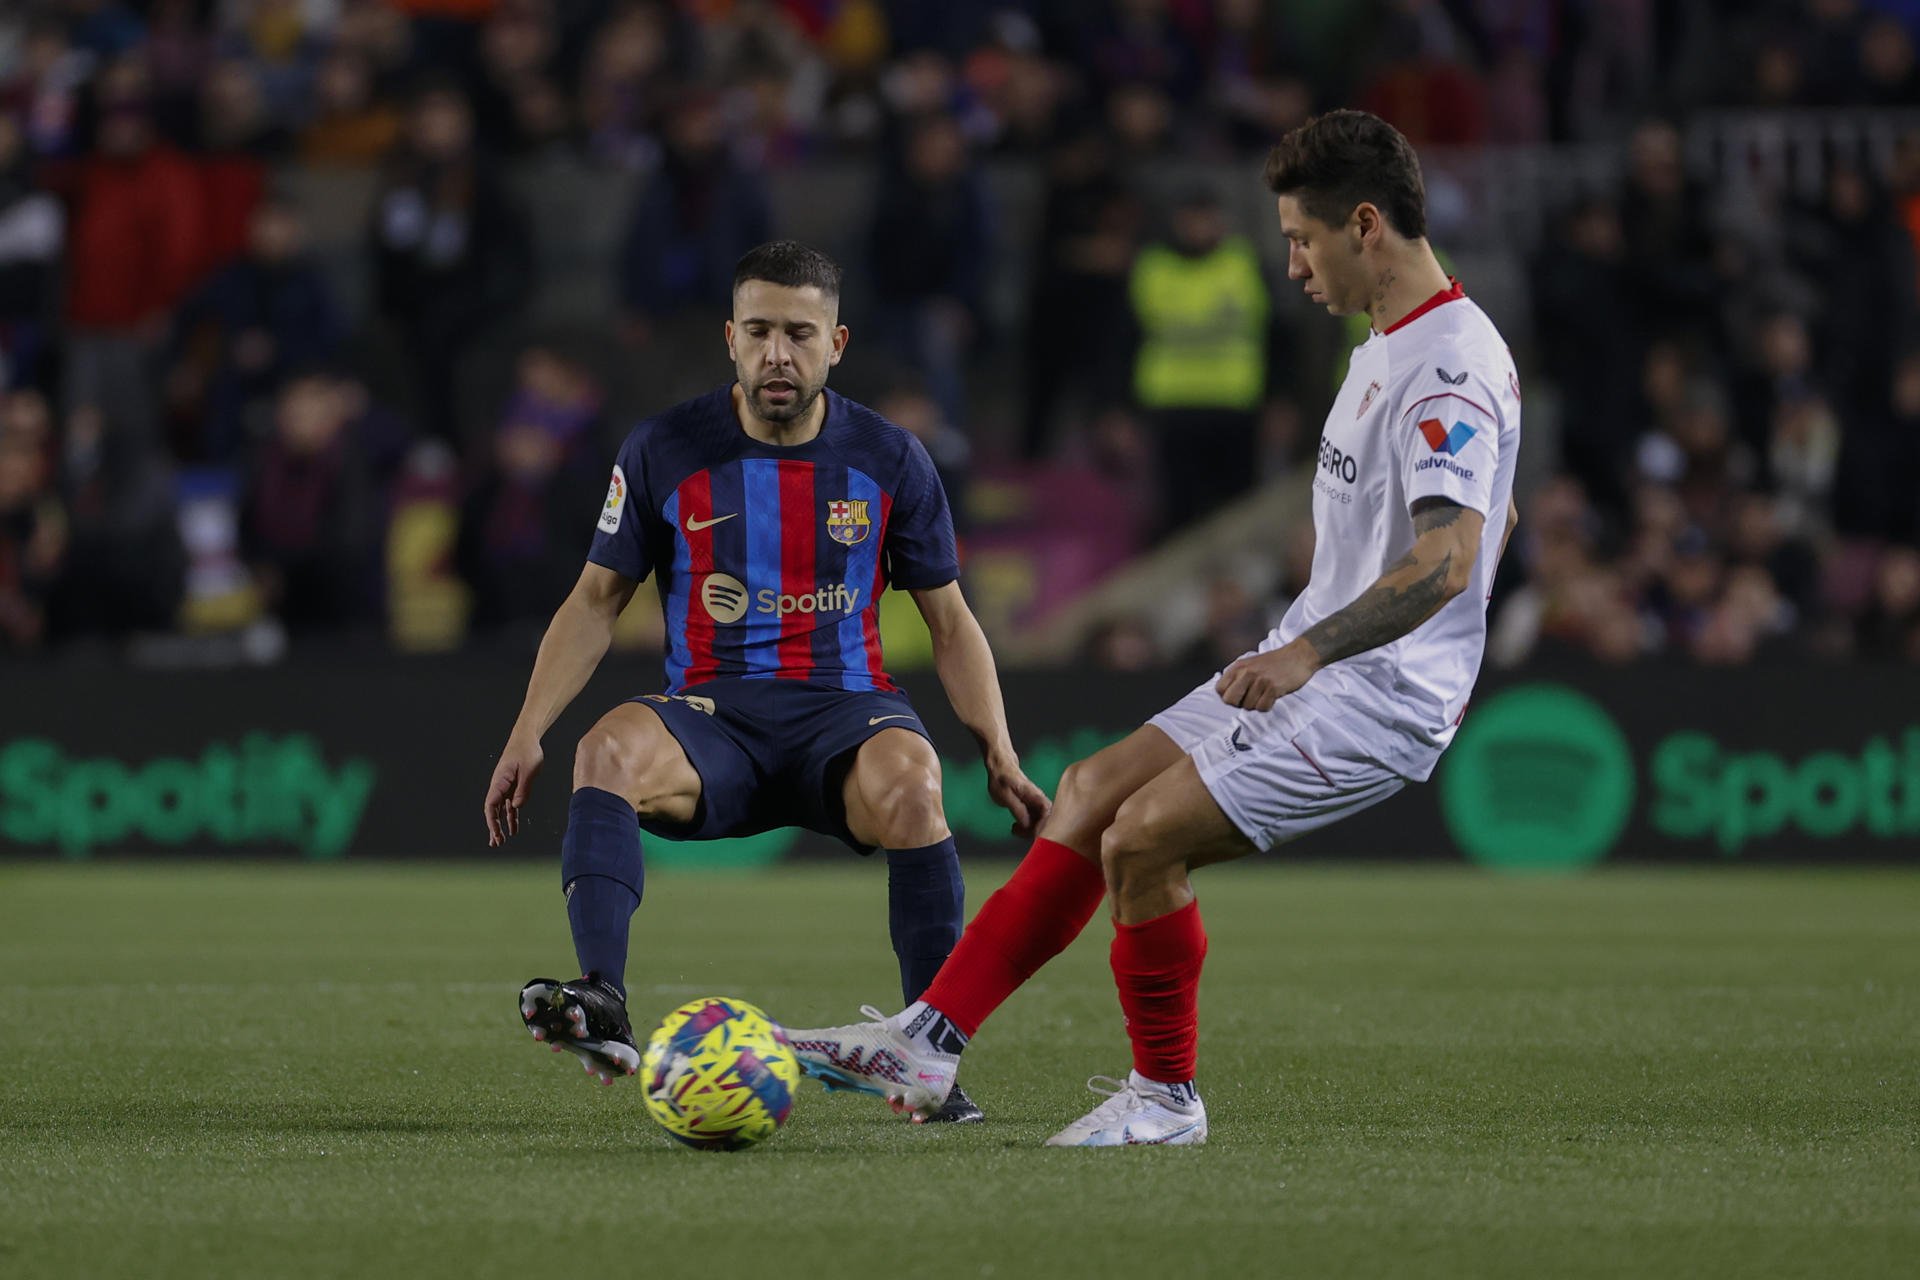 KO a Jordi Alba, el Barça cierra a su sustituto, jugador altamente conflictivo